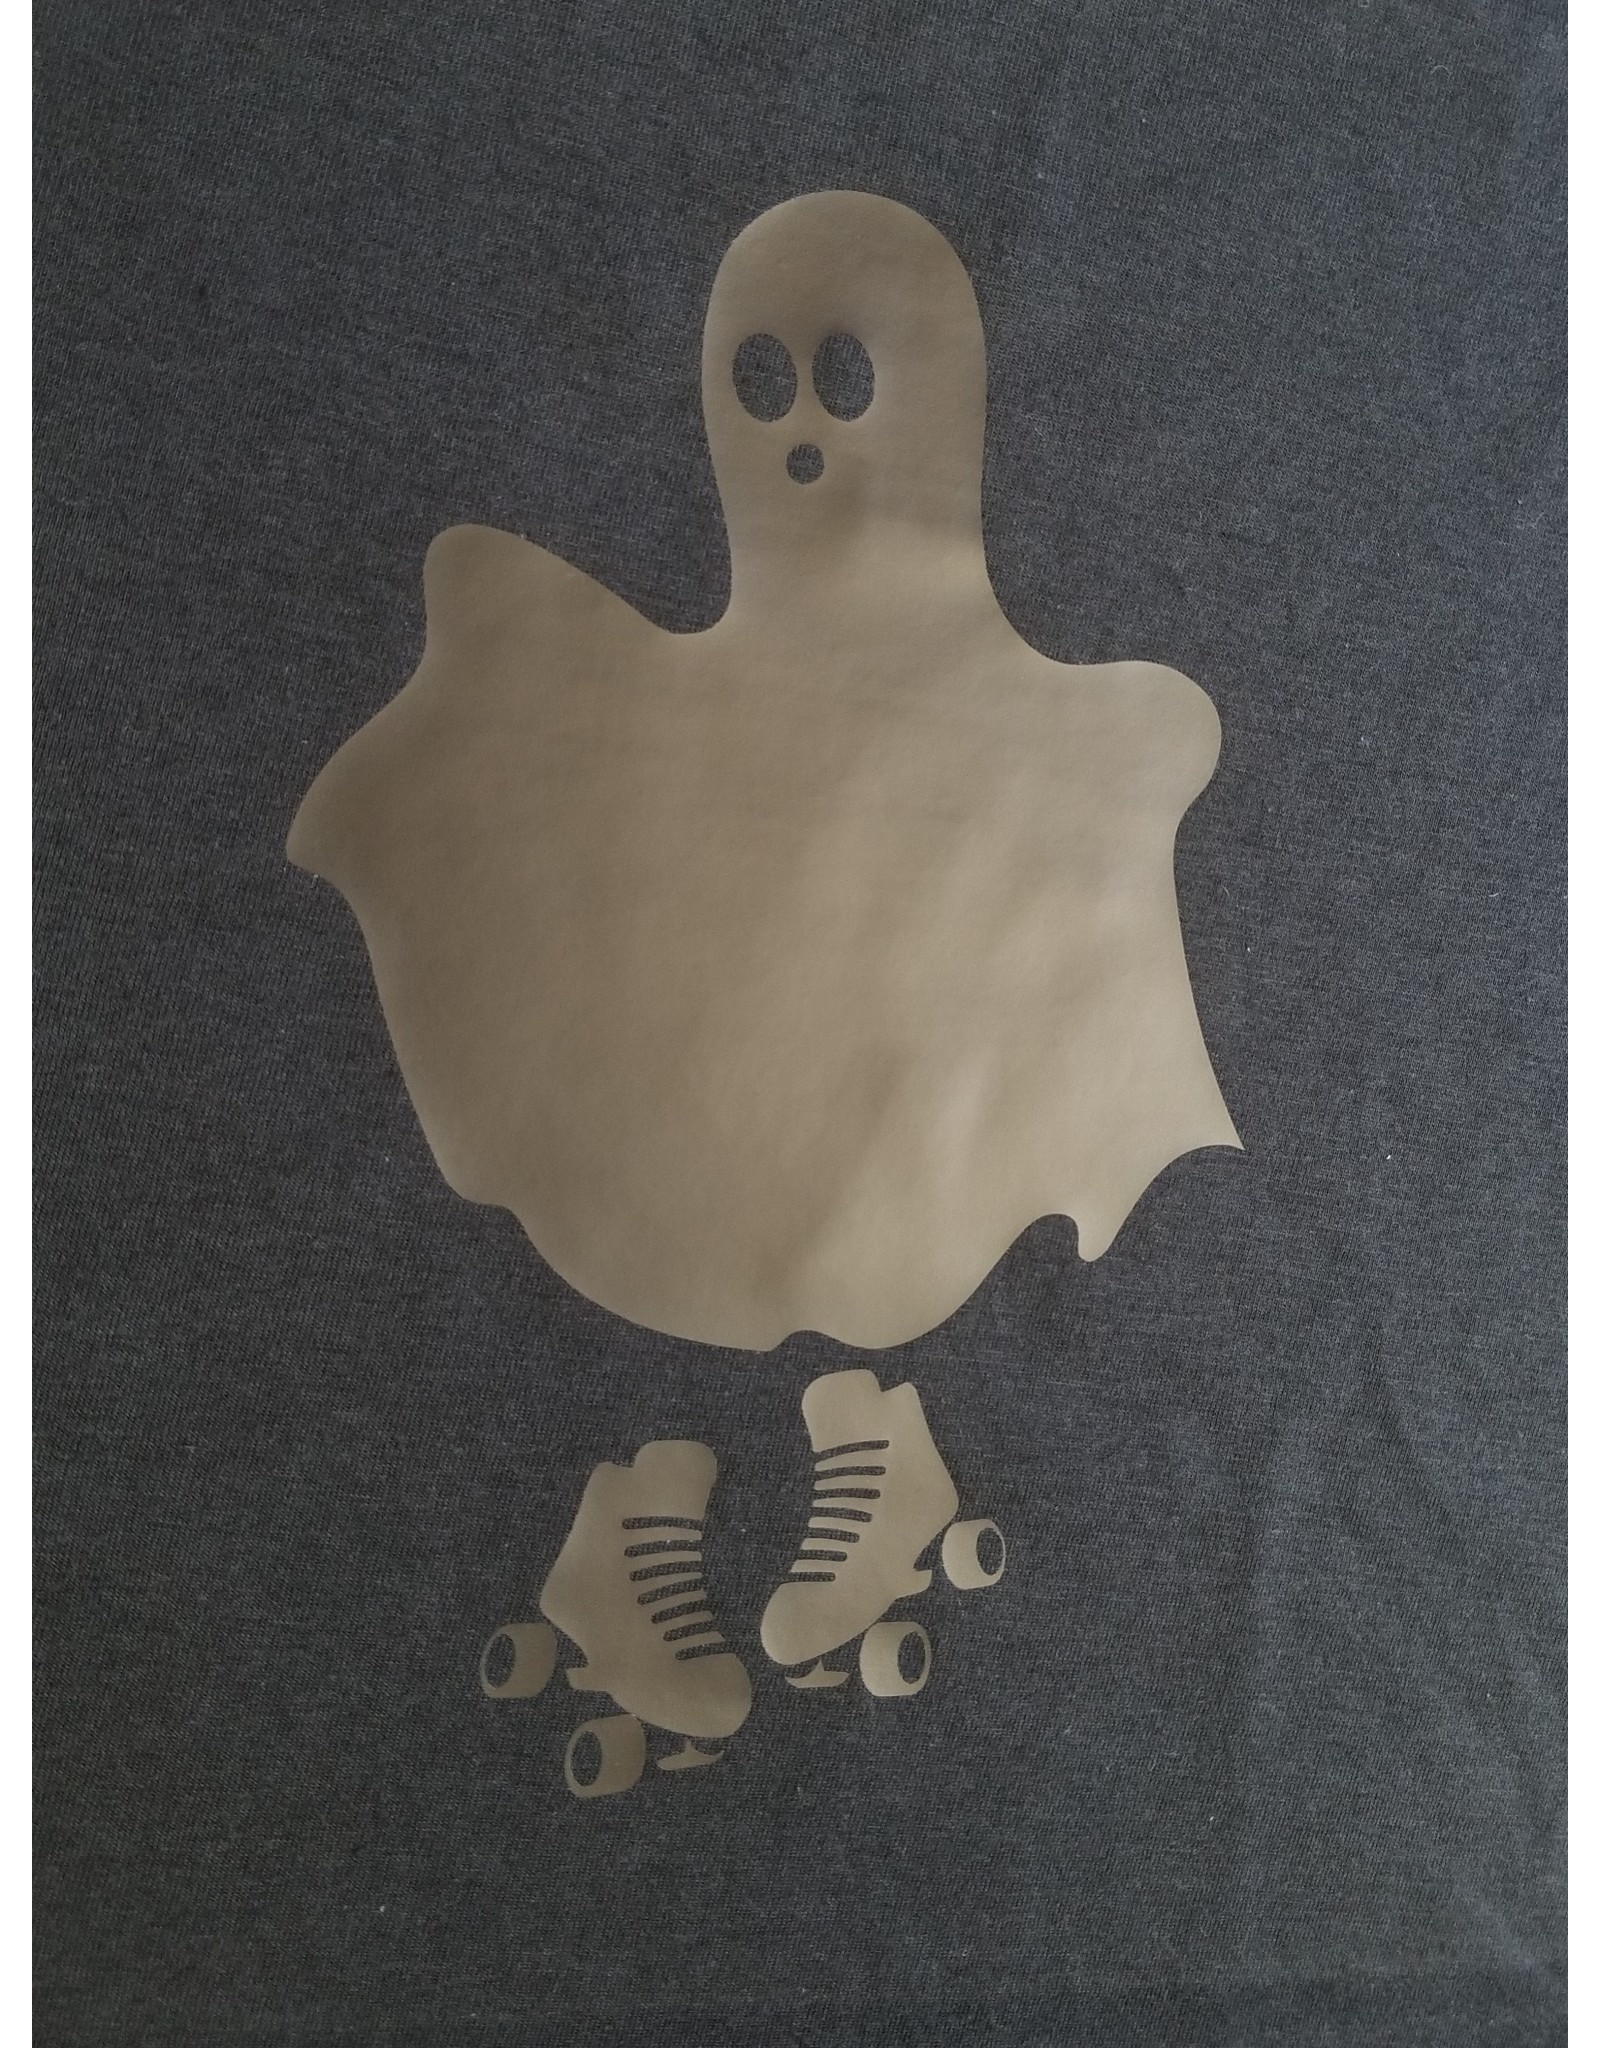 Nerd Ghostie T-shirt Unisex